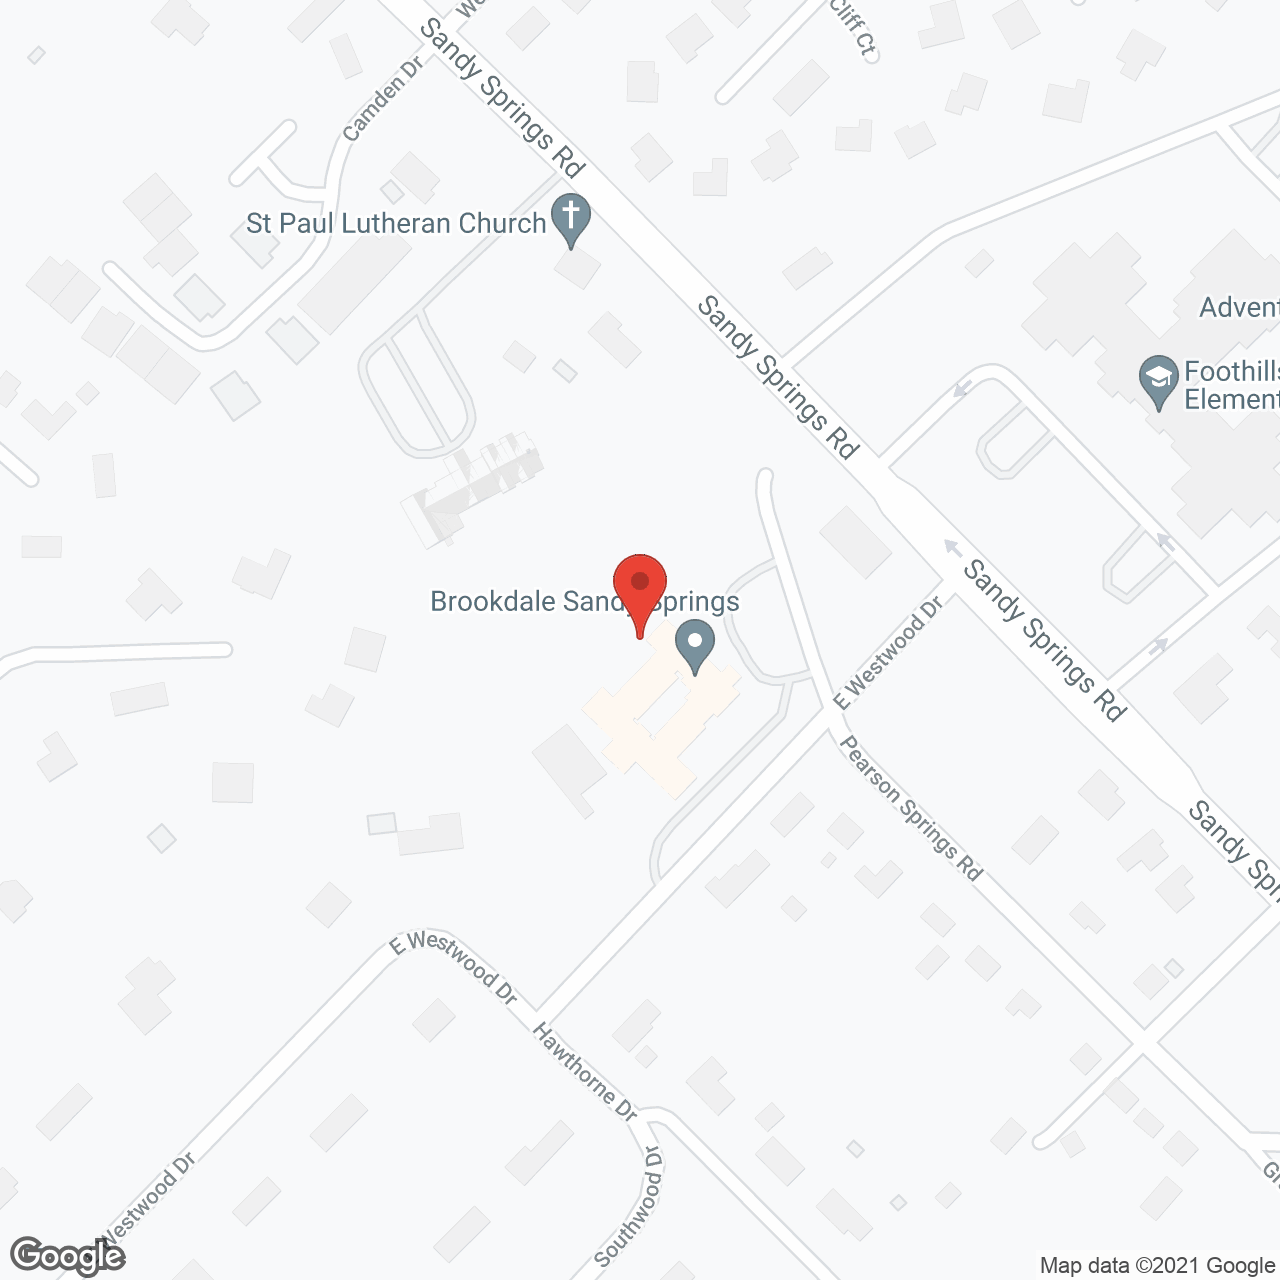 Brookdale Sandy Springs in google map